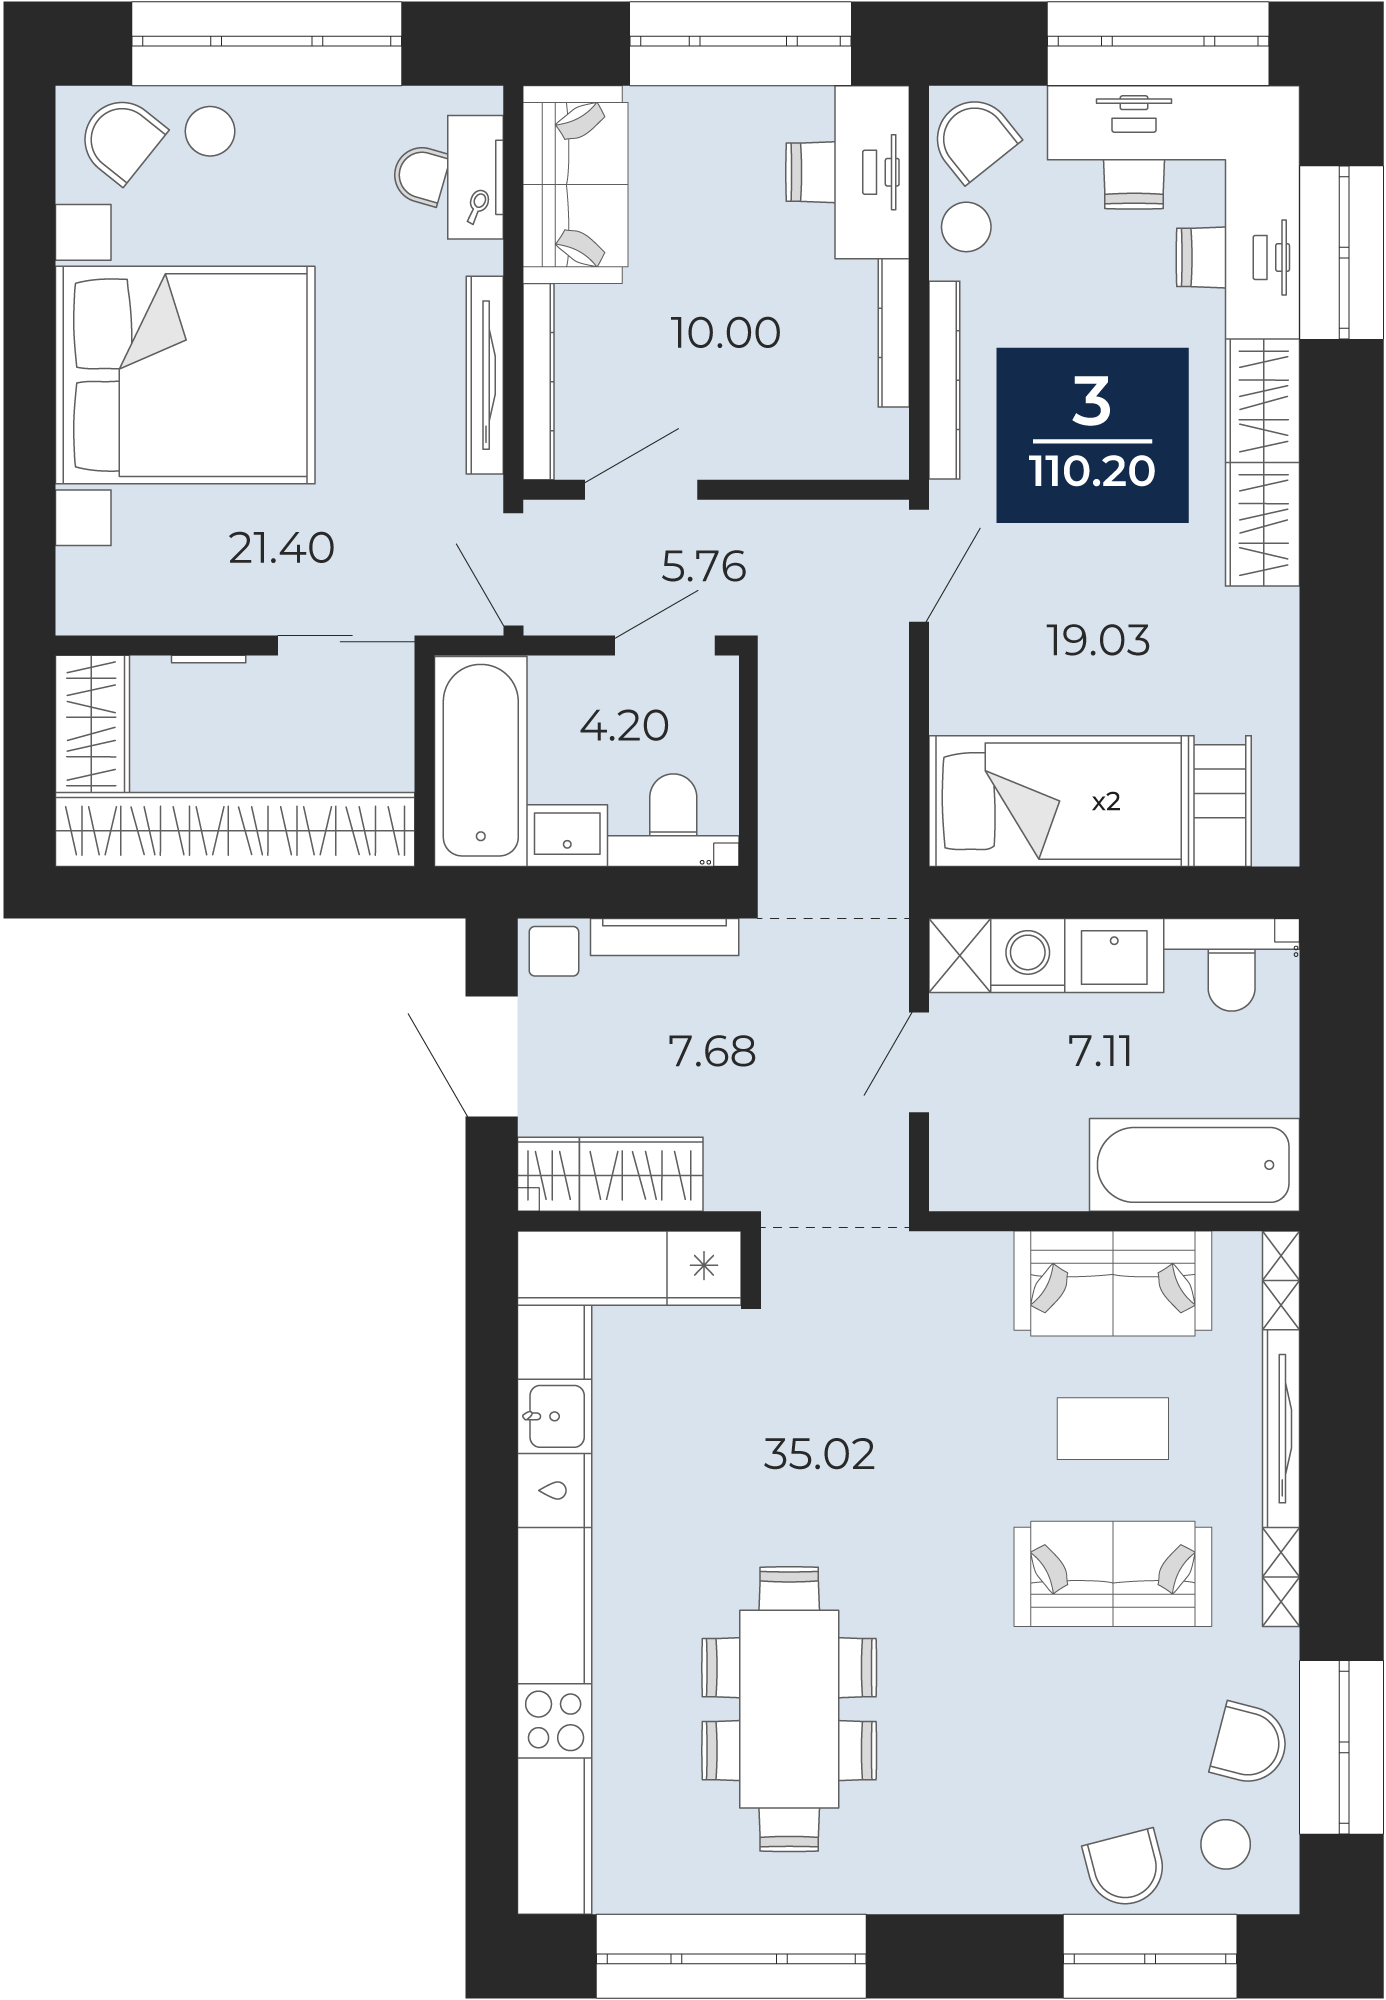 Квартира № 48, 3-комнатная, 110.2 кв. м, 8 этаж